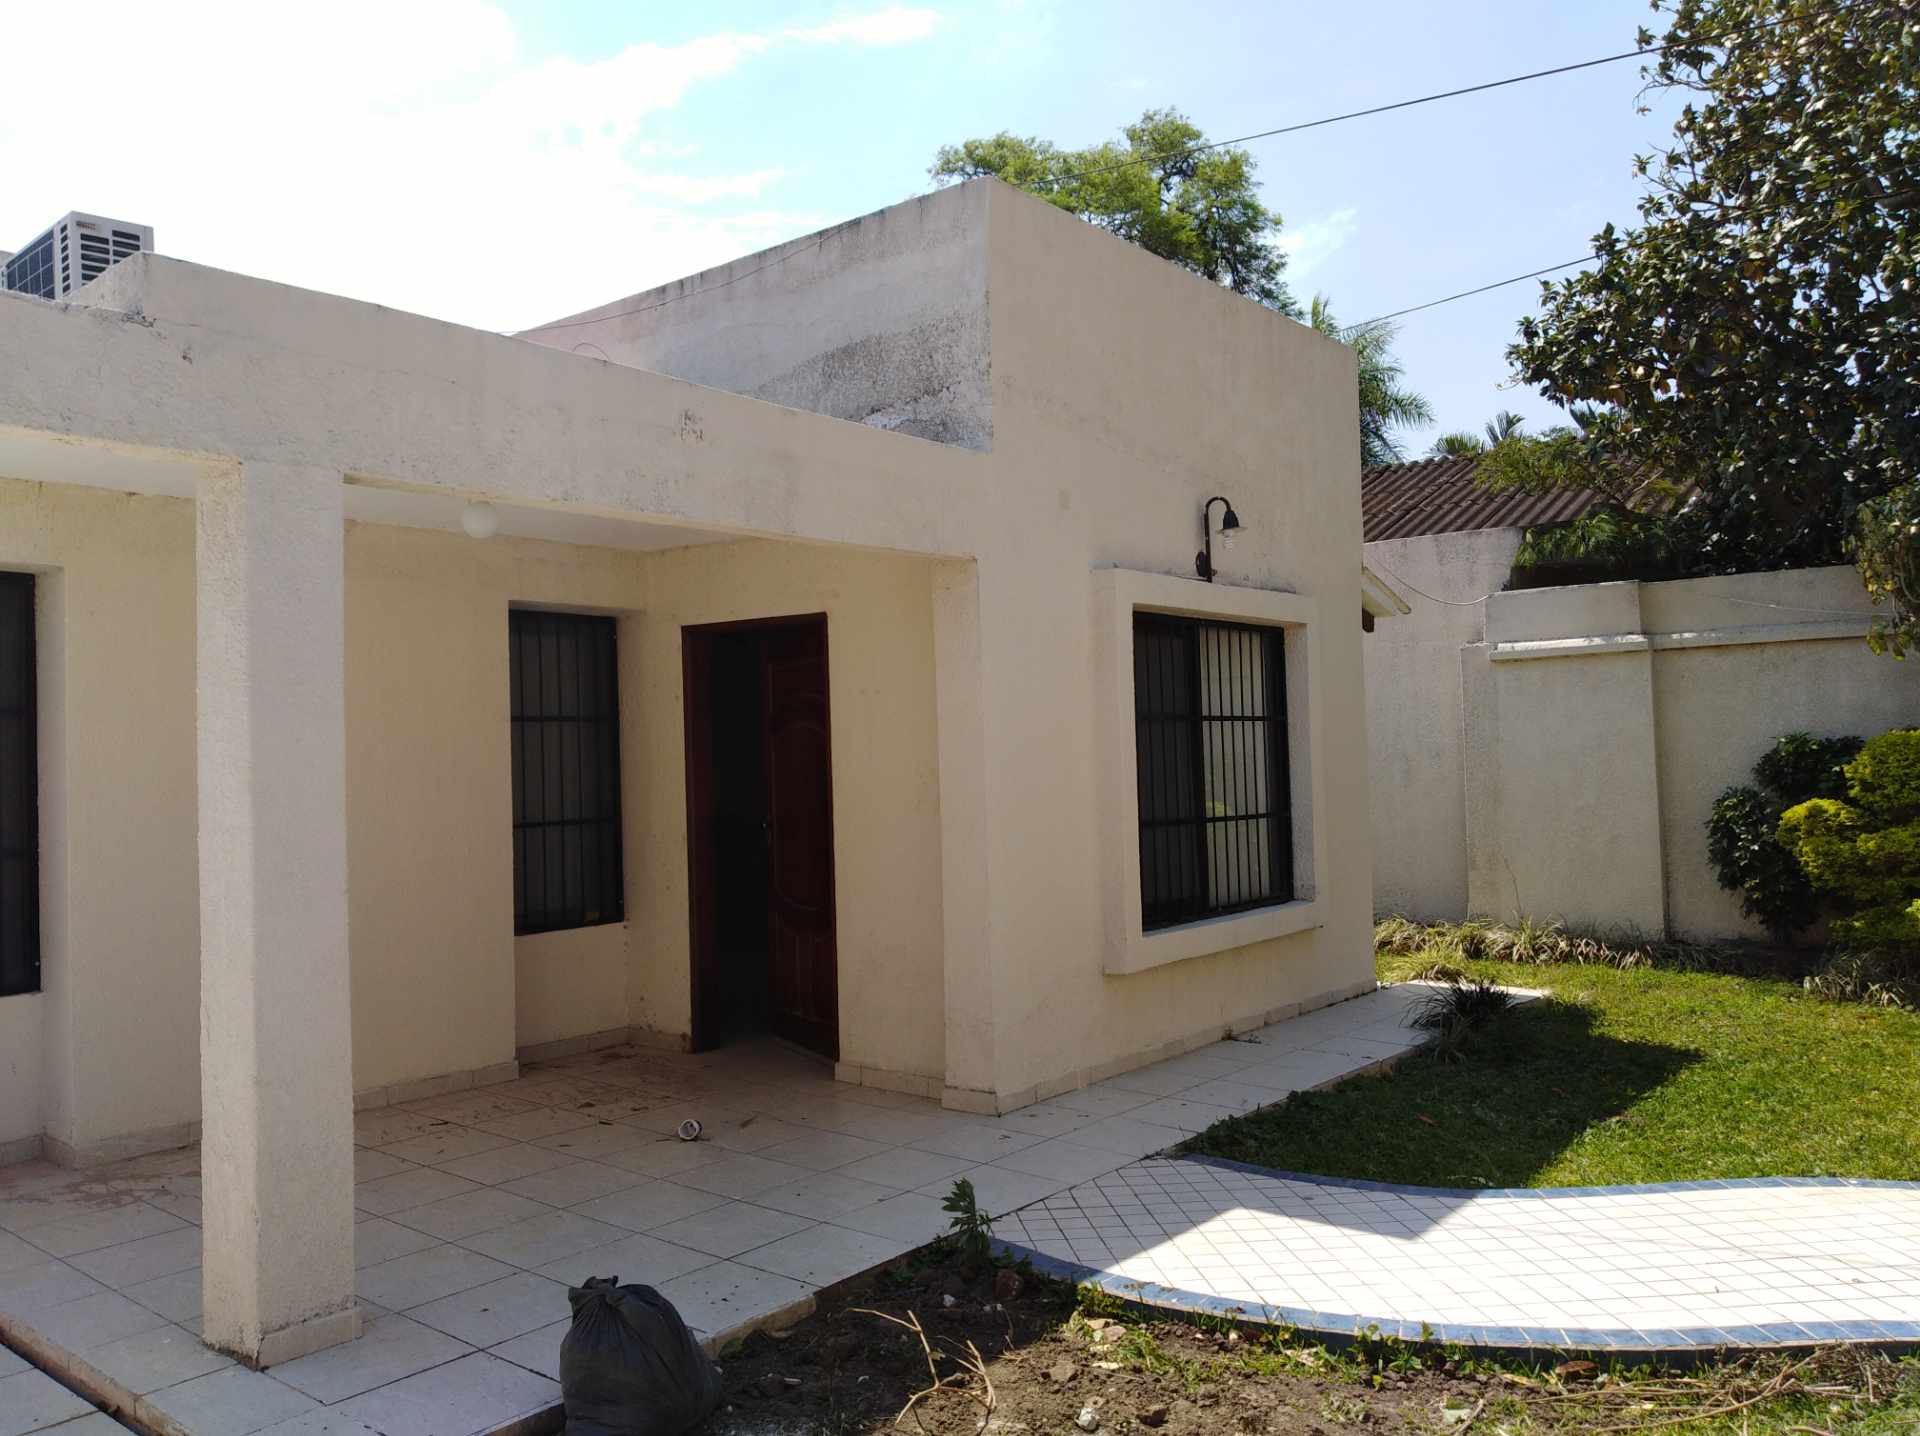 Casa en Barrio Urbari en Santa Cruz de la Sierra 3 dormitorios 3 baños 2 parqueos Foto 1